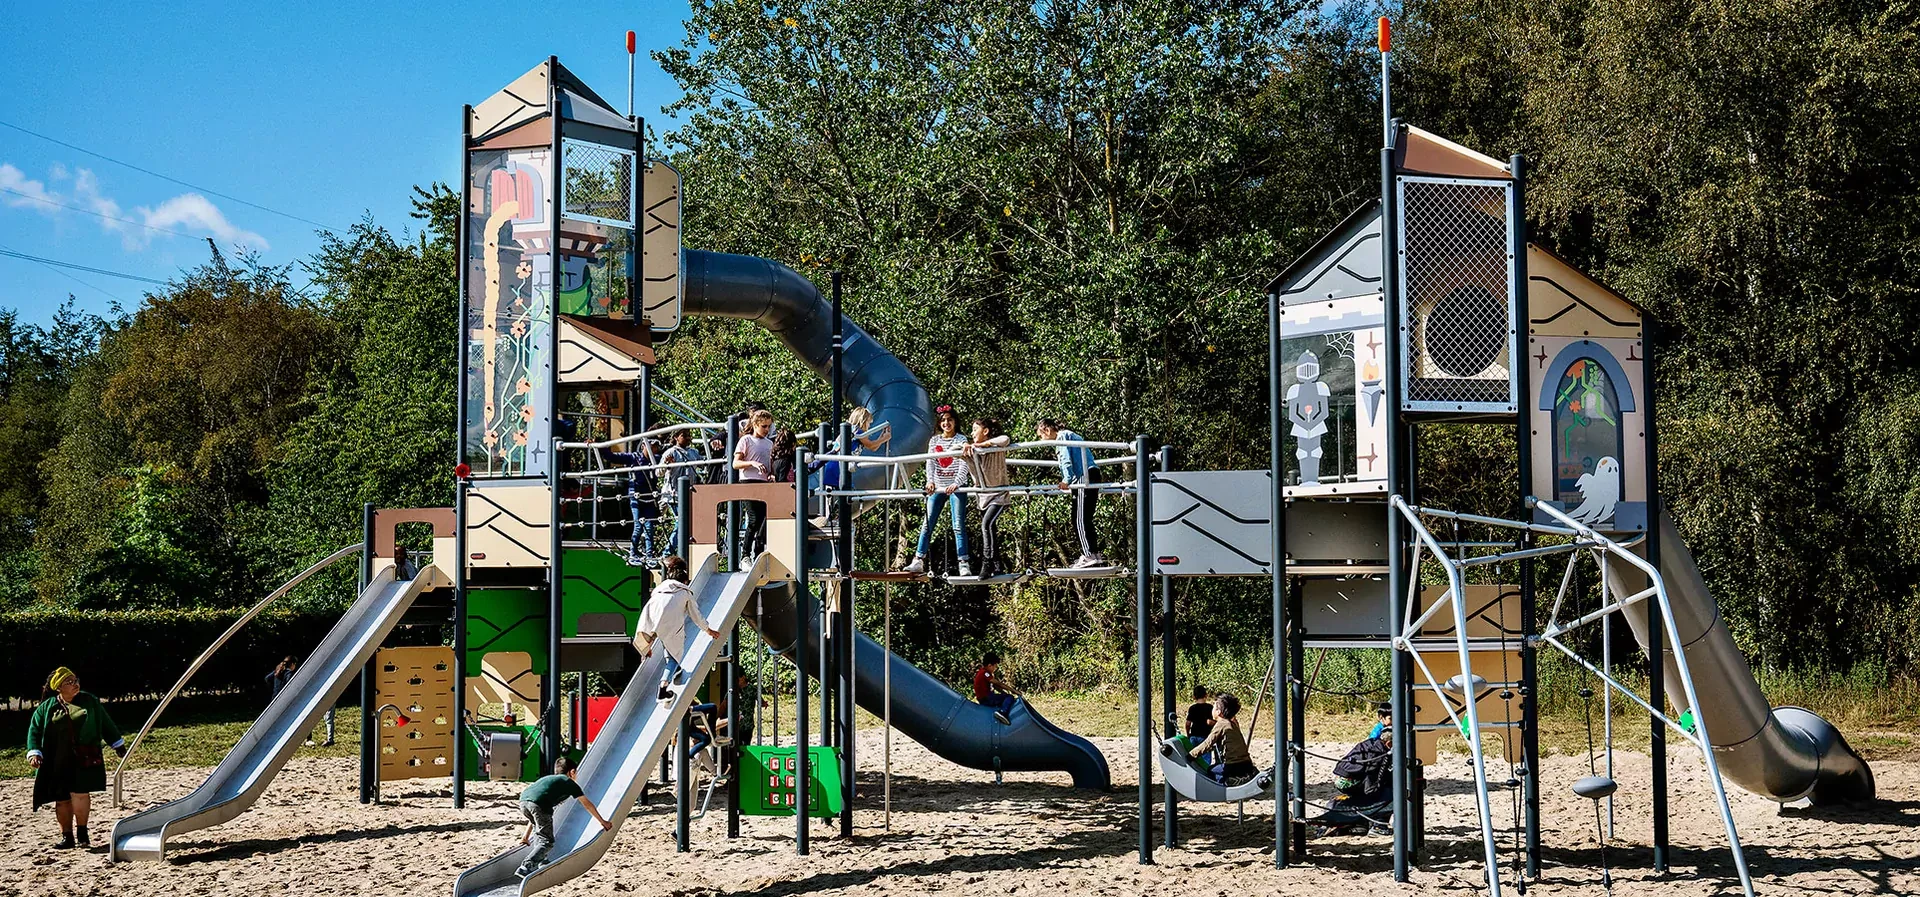 pääkuva suuresta leikkijärjestelmästä puistossa, jossa koululaiset leikkivät